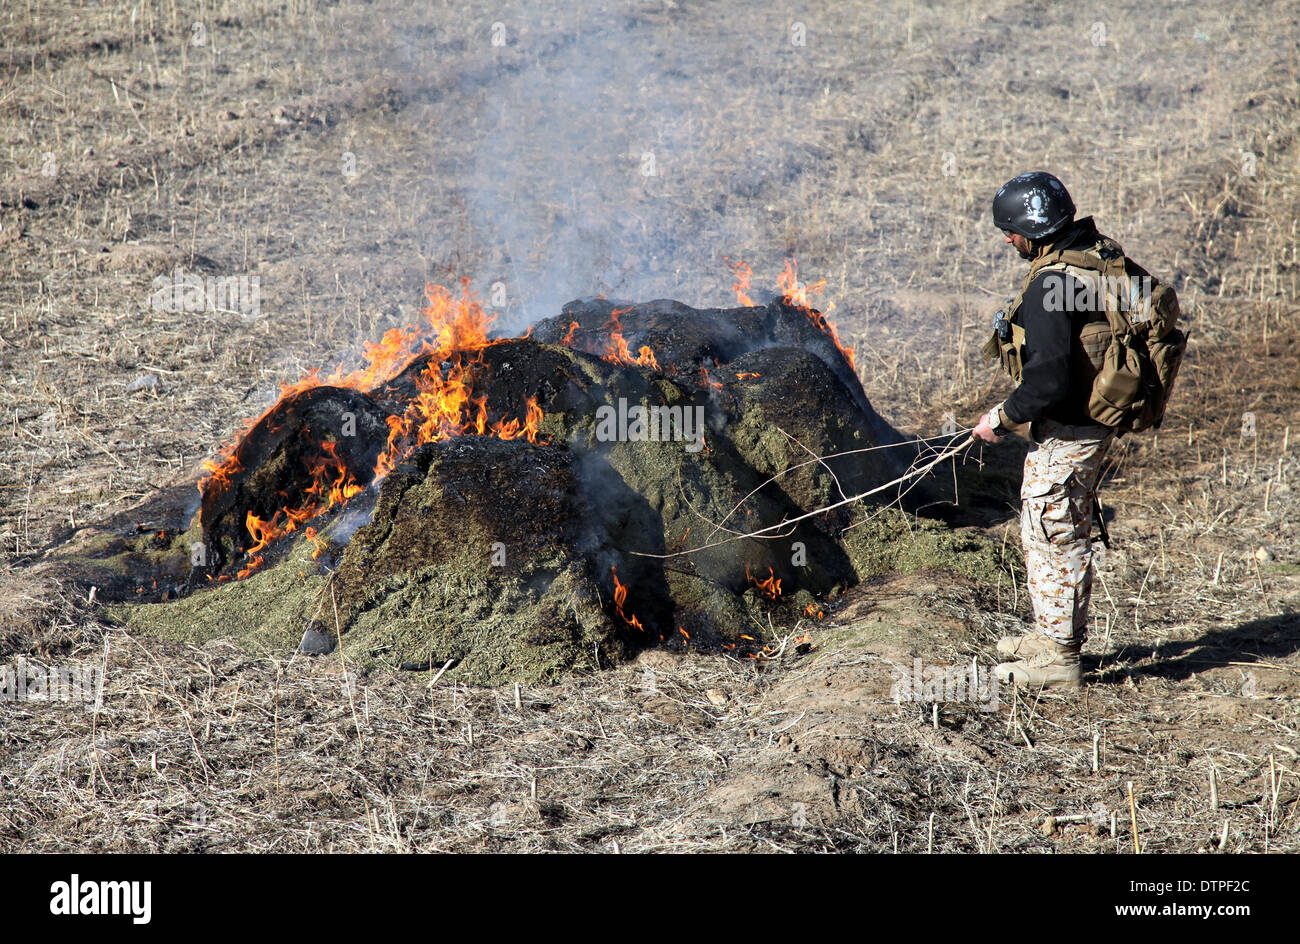 Un membro delle forze di sicurezza nazionali afgane brucia più di 2.800 libbre di marijuana sequestrati trovato durante un'operazione di compensazione 16 febbraio 2014 nel quartiere Zharay, provincia di Kandahar, Afghanistan. Foto Stock